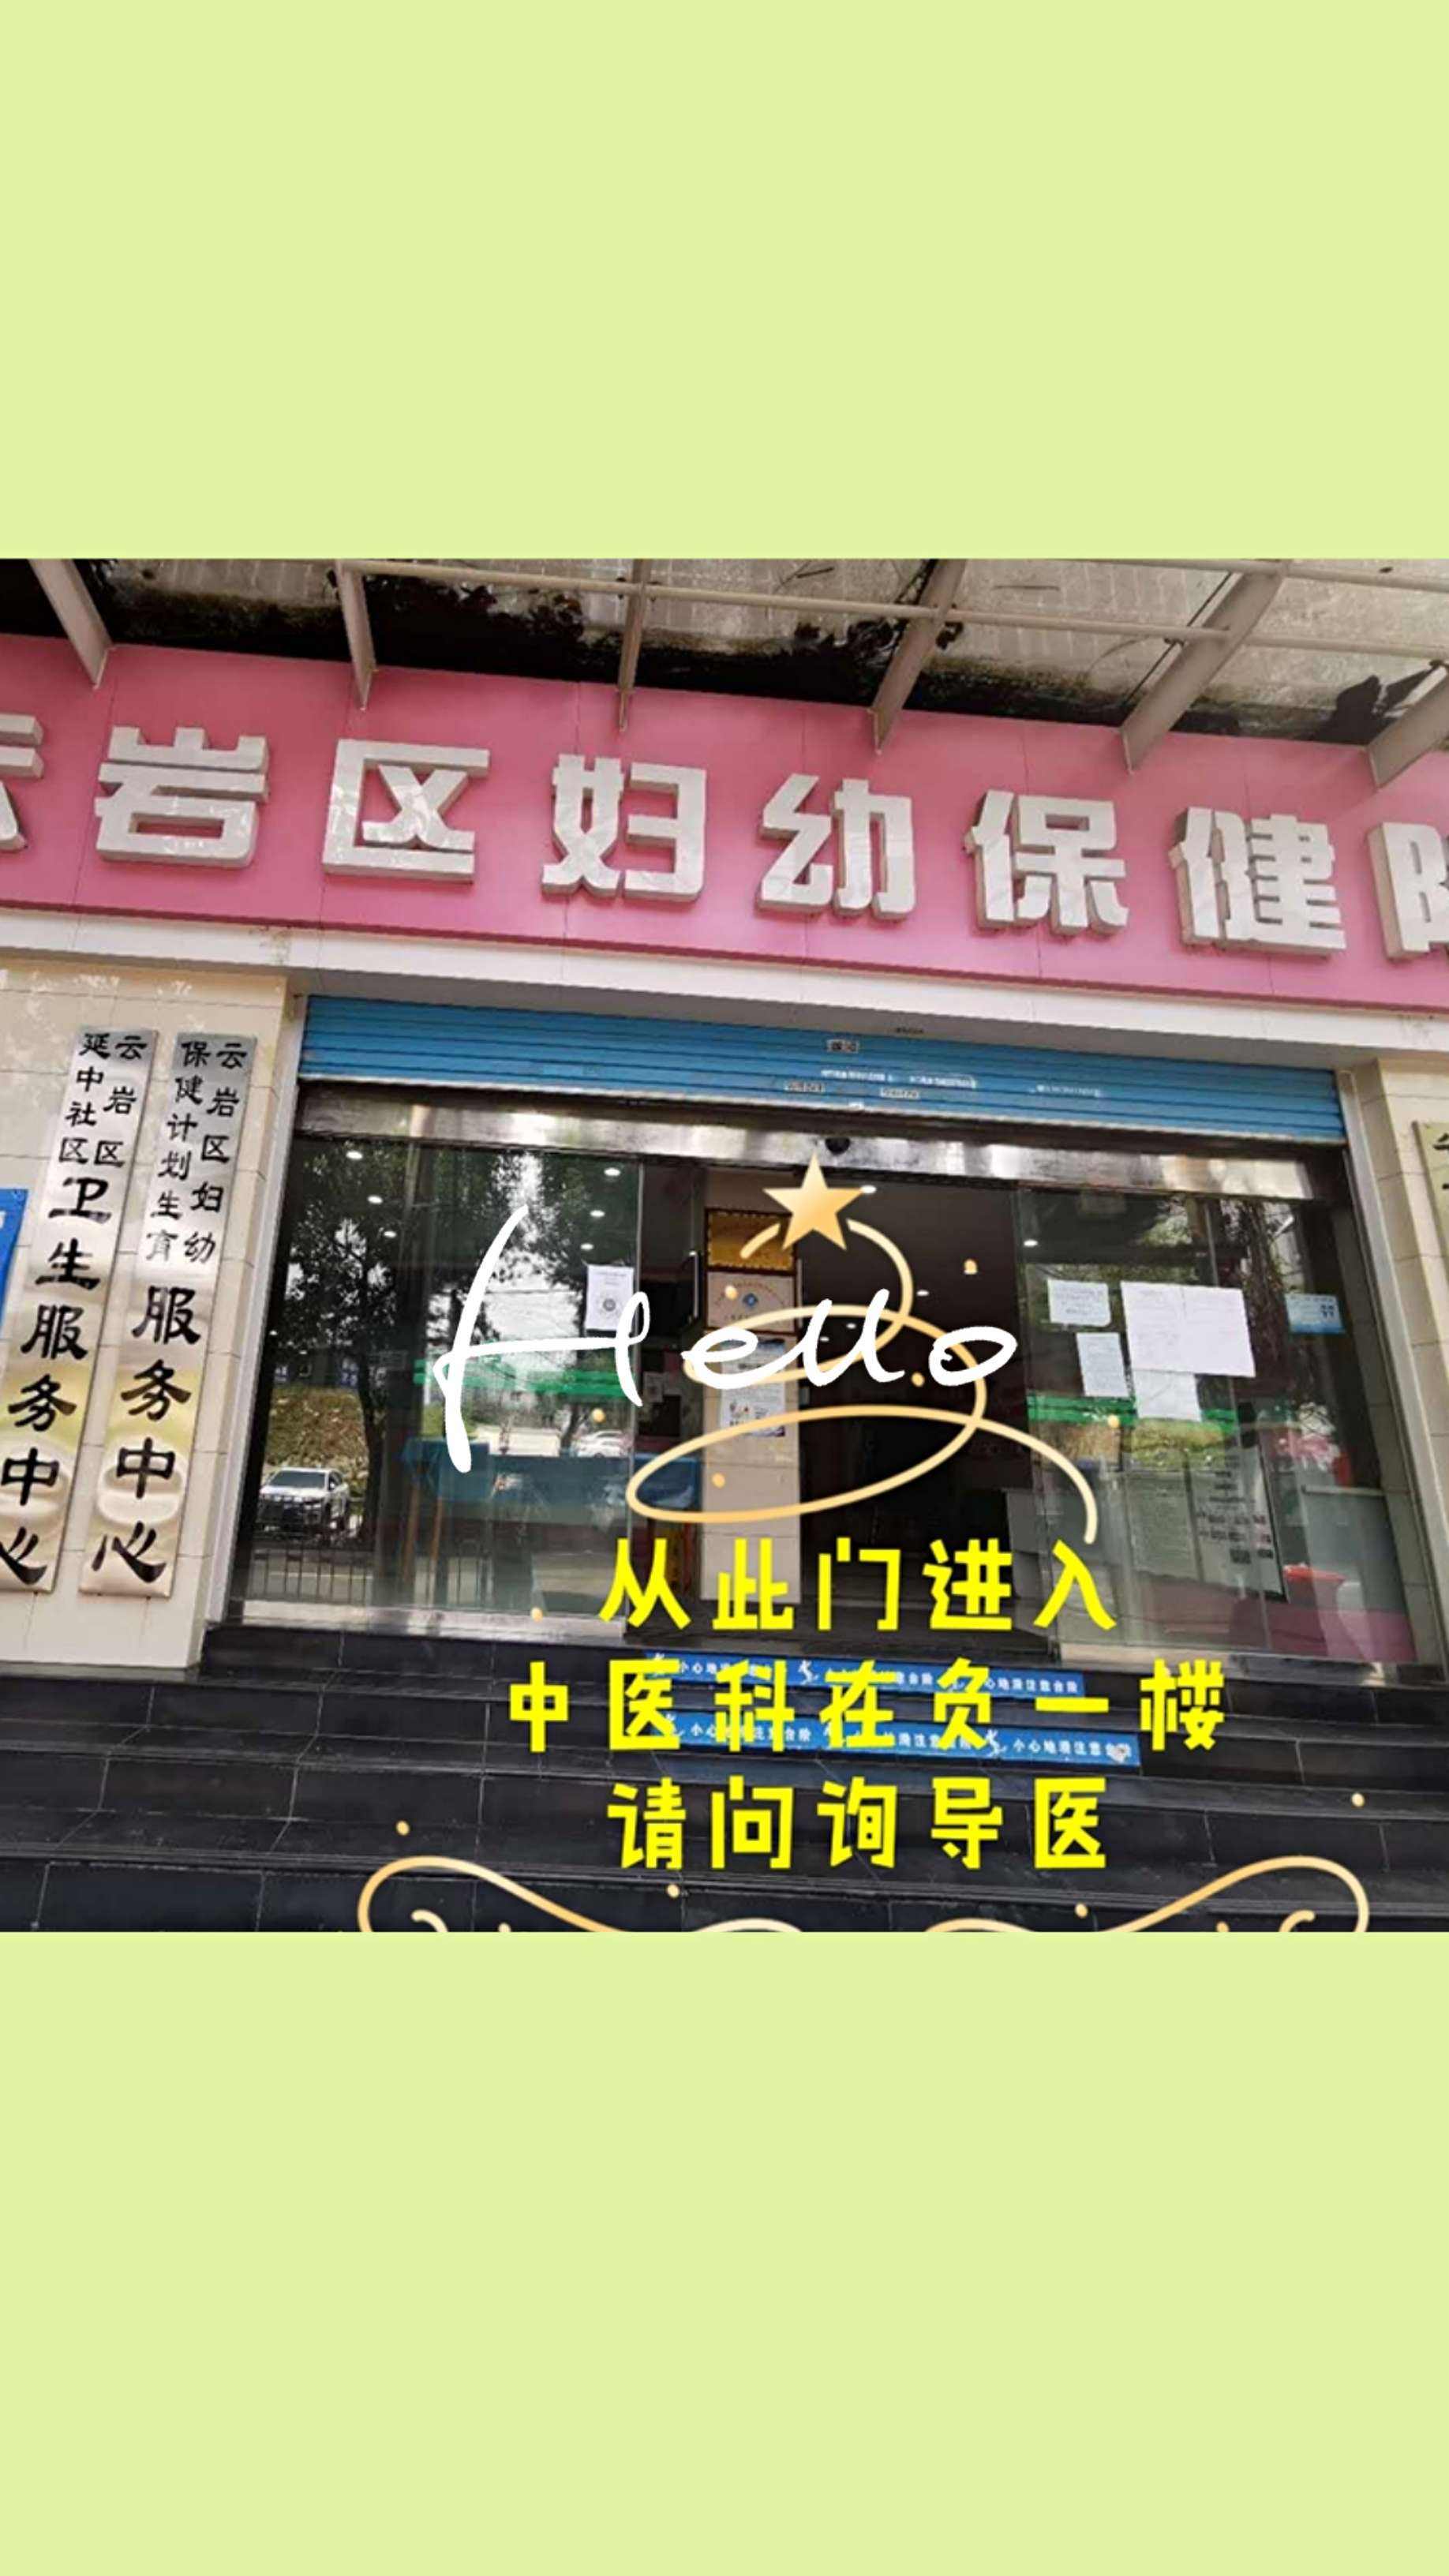 包含北京市海淀妇幼保健院代挂专家号怎么买的词条